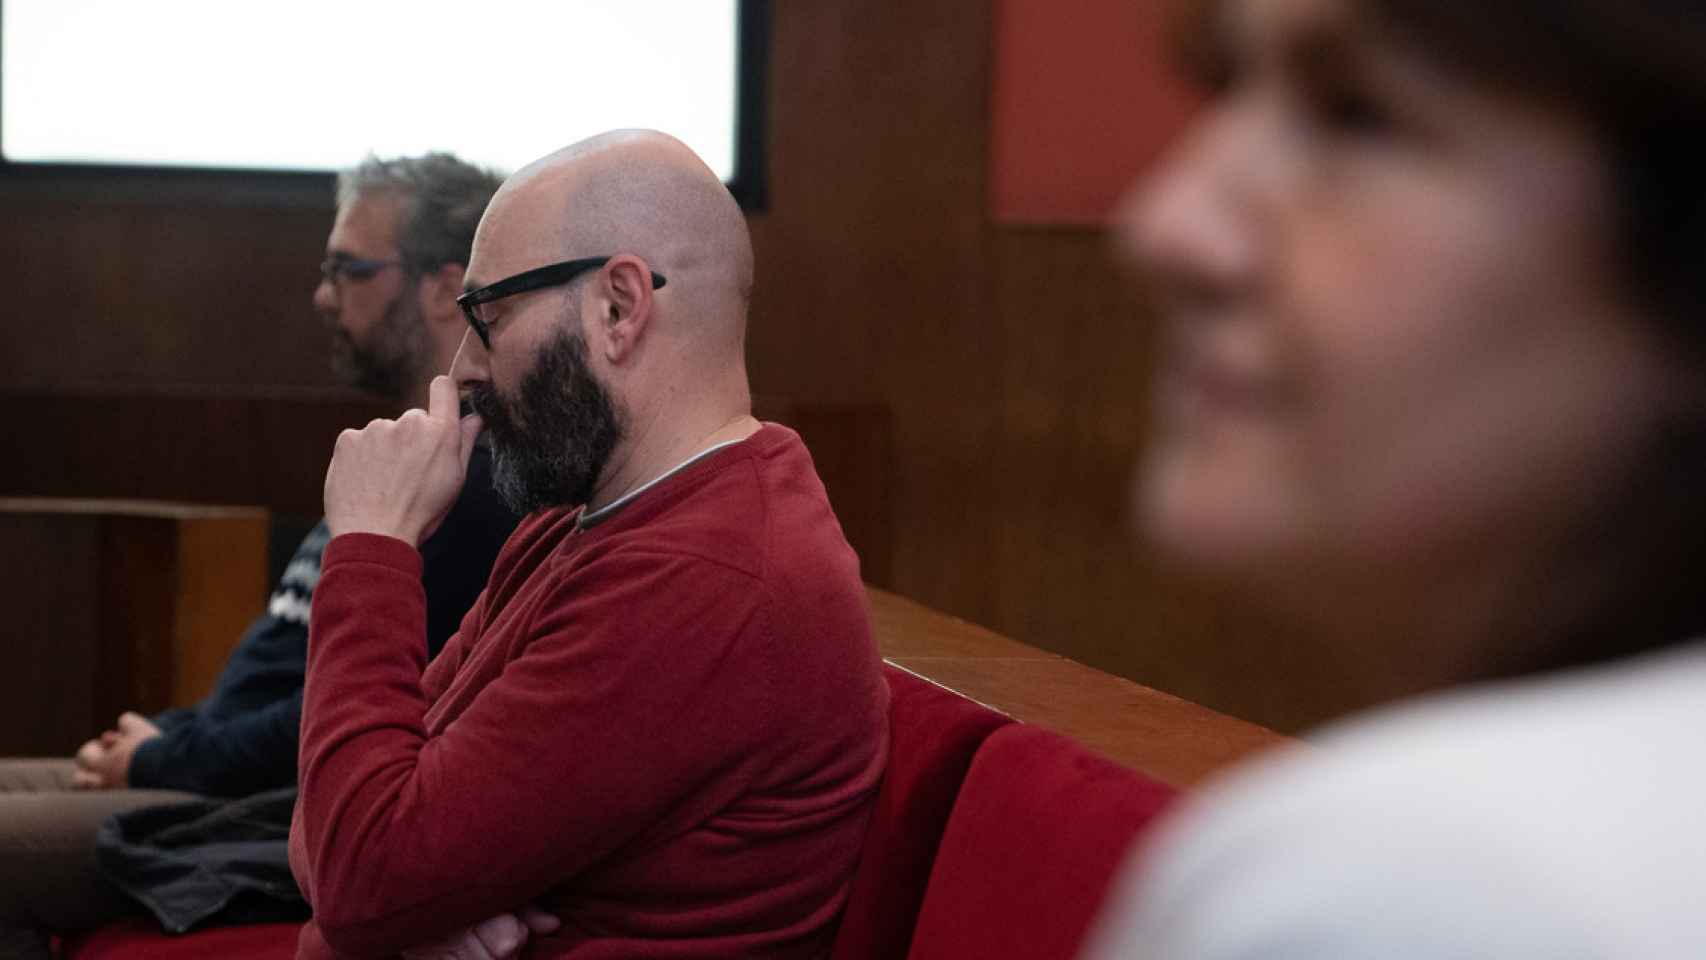 Isaías Herrero, amigo de Laura Borràs, durante el juicio / DAVID ZORRAKINO - EUROPA PRESS